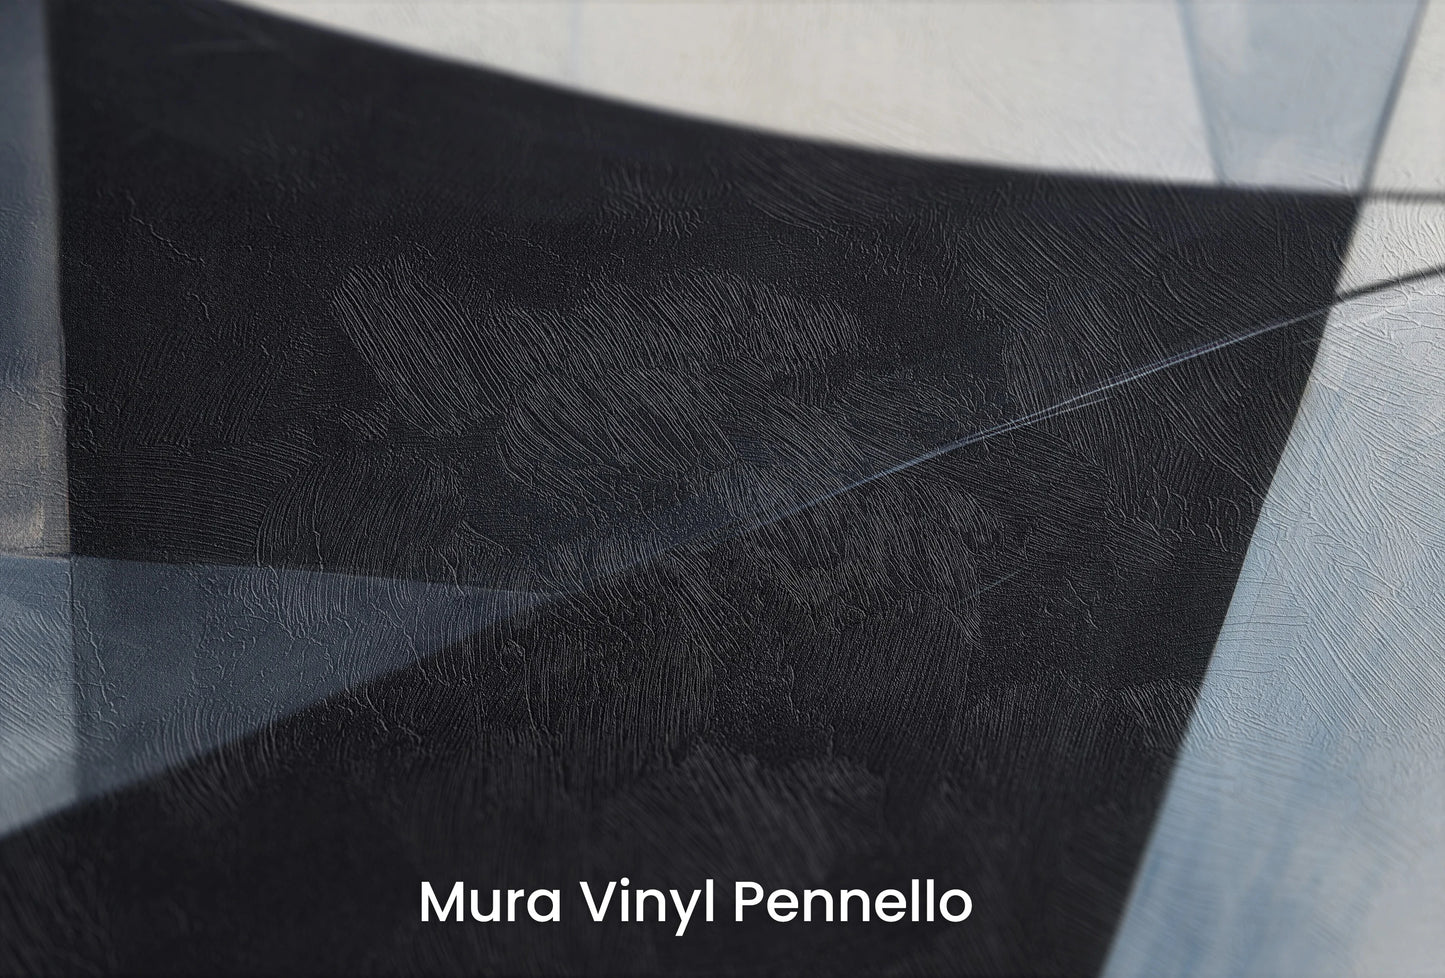 Zbliżenie na artystyczną fototapetę o nazwie Monochrome Elegance #5 na podłożu Mura Vinyl Pennello - faktura pociągnięć pędzla malarskiego.